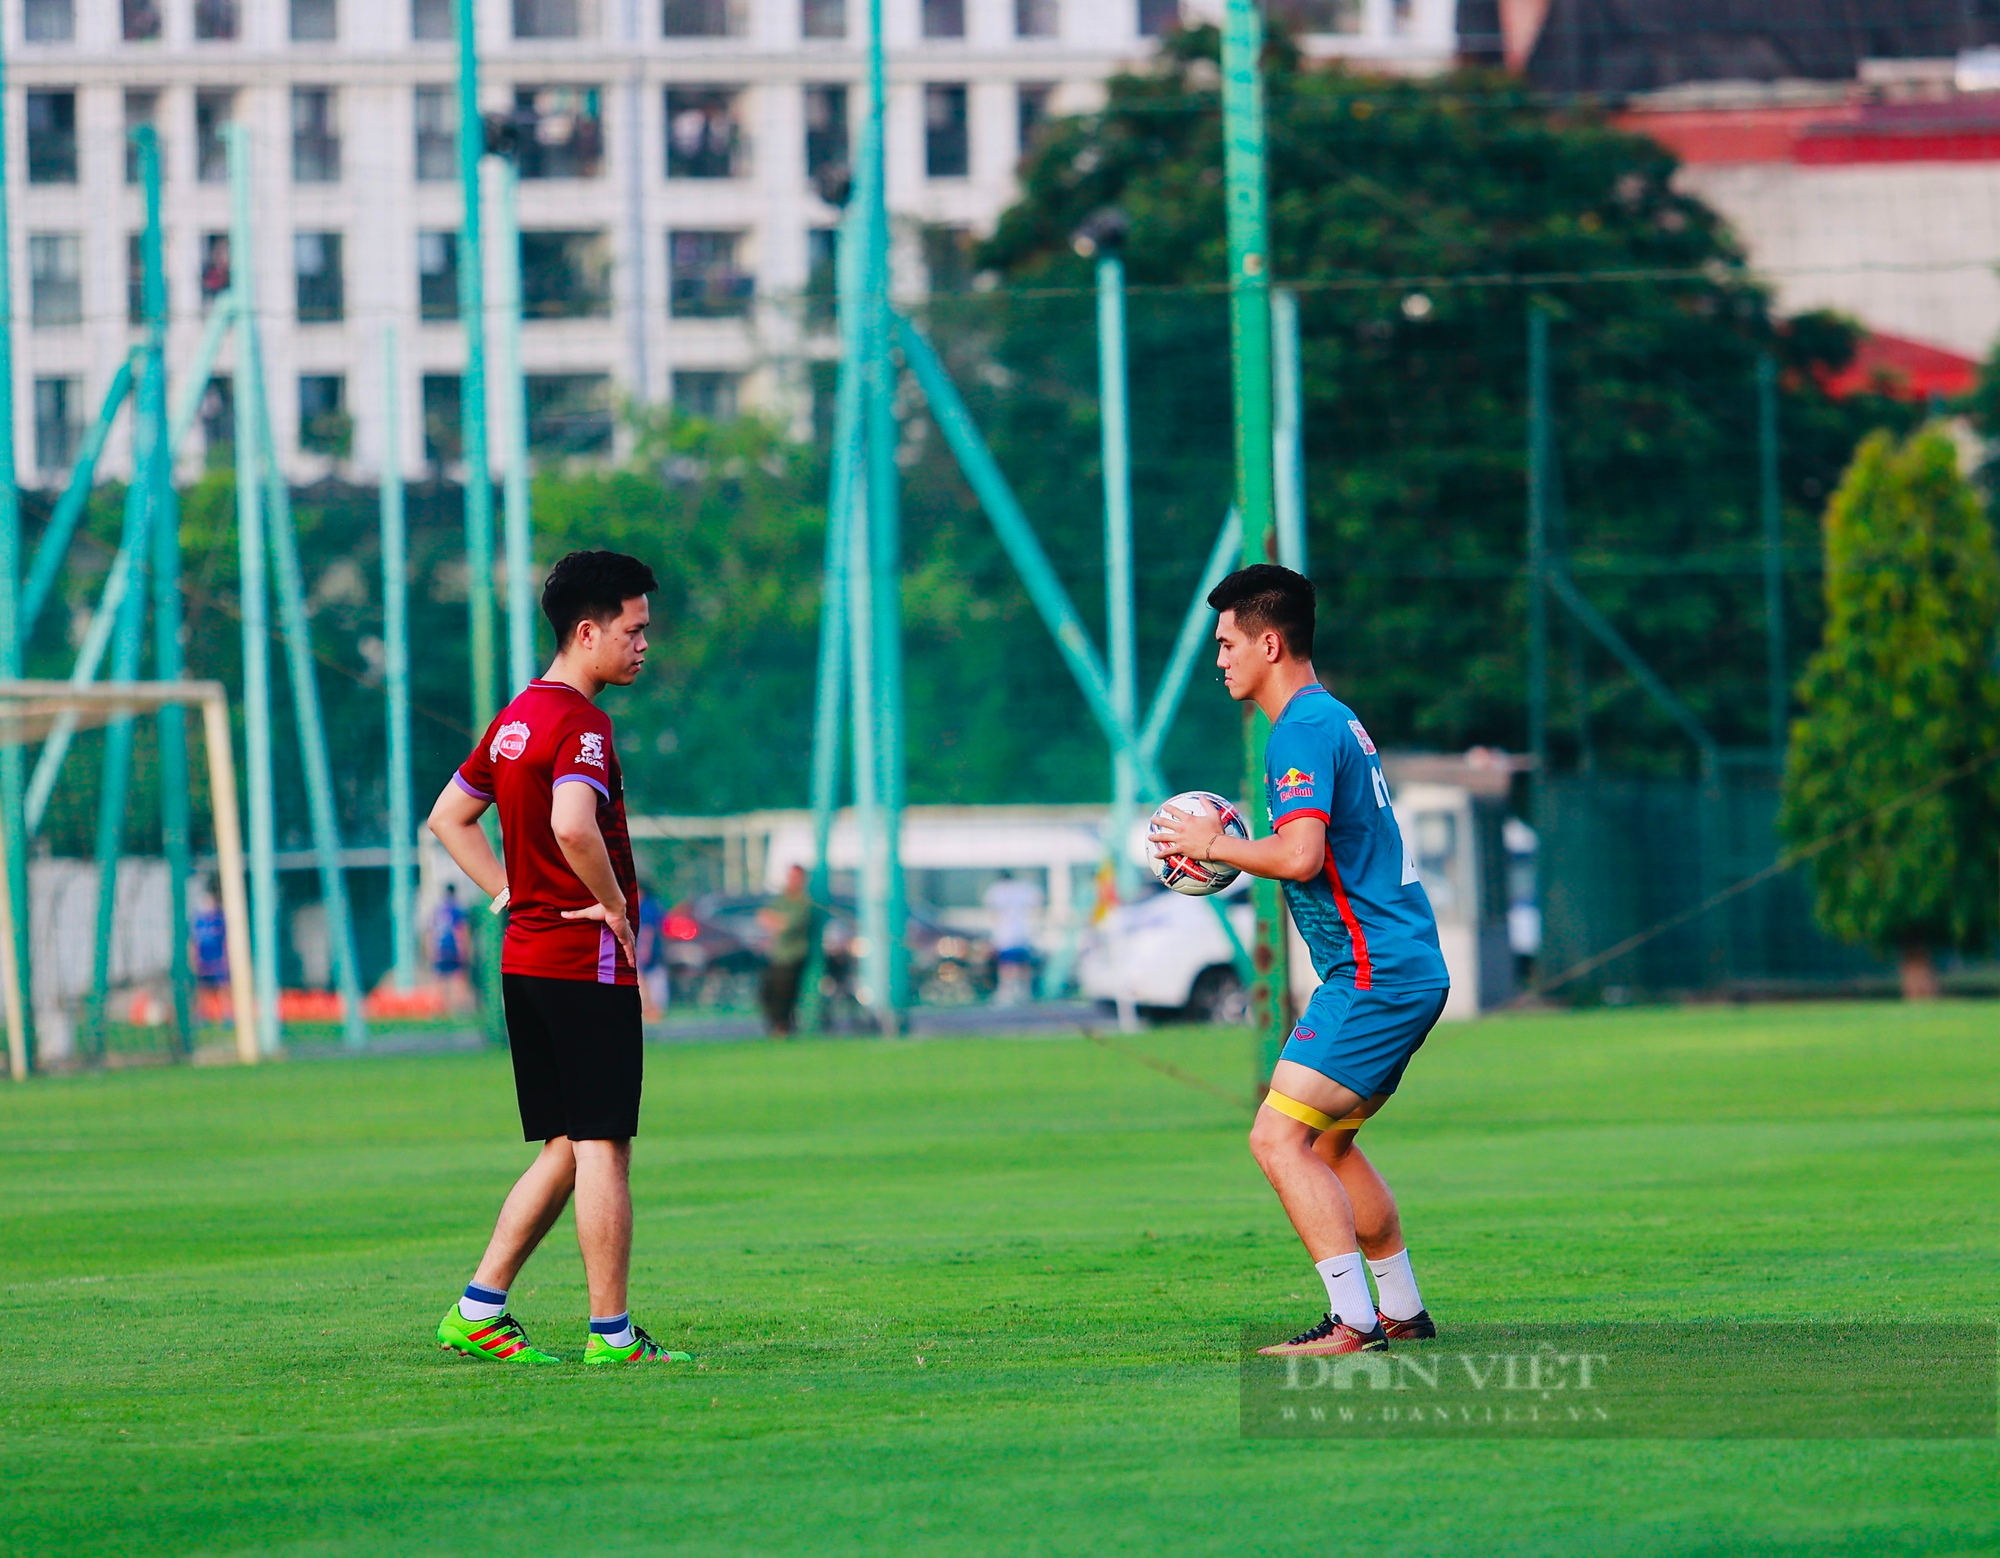 Tiền vệ Nguyễn An Khánh thích nghi nhanh trong bài tập của HLV Philippe Troussier - Ảnh 6.